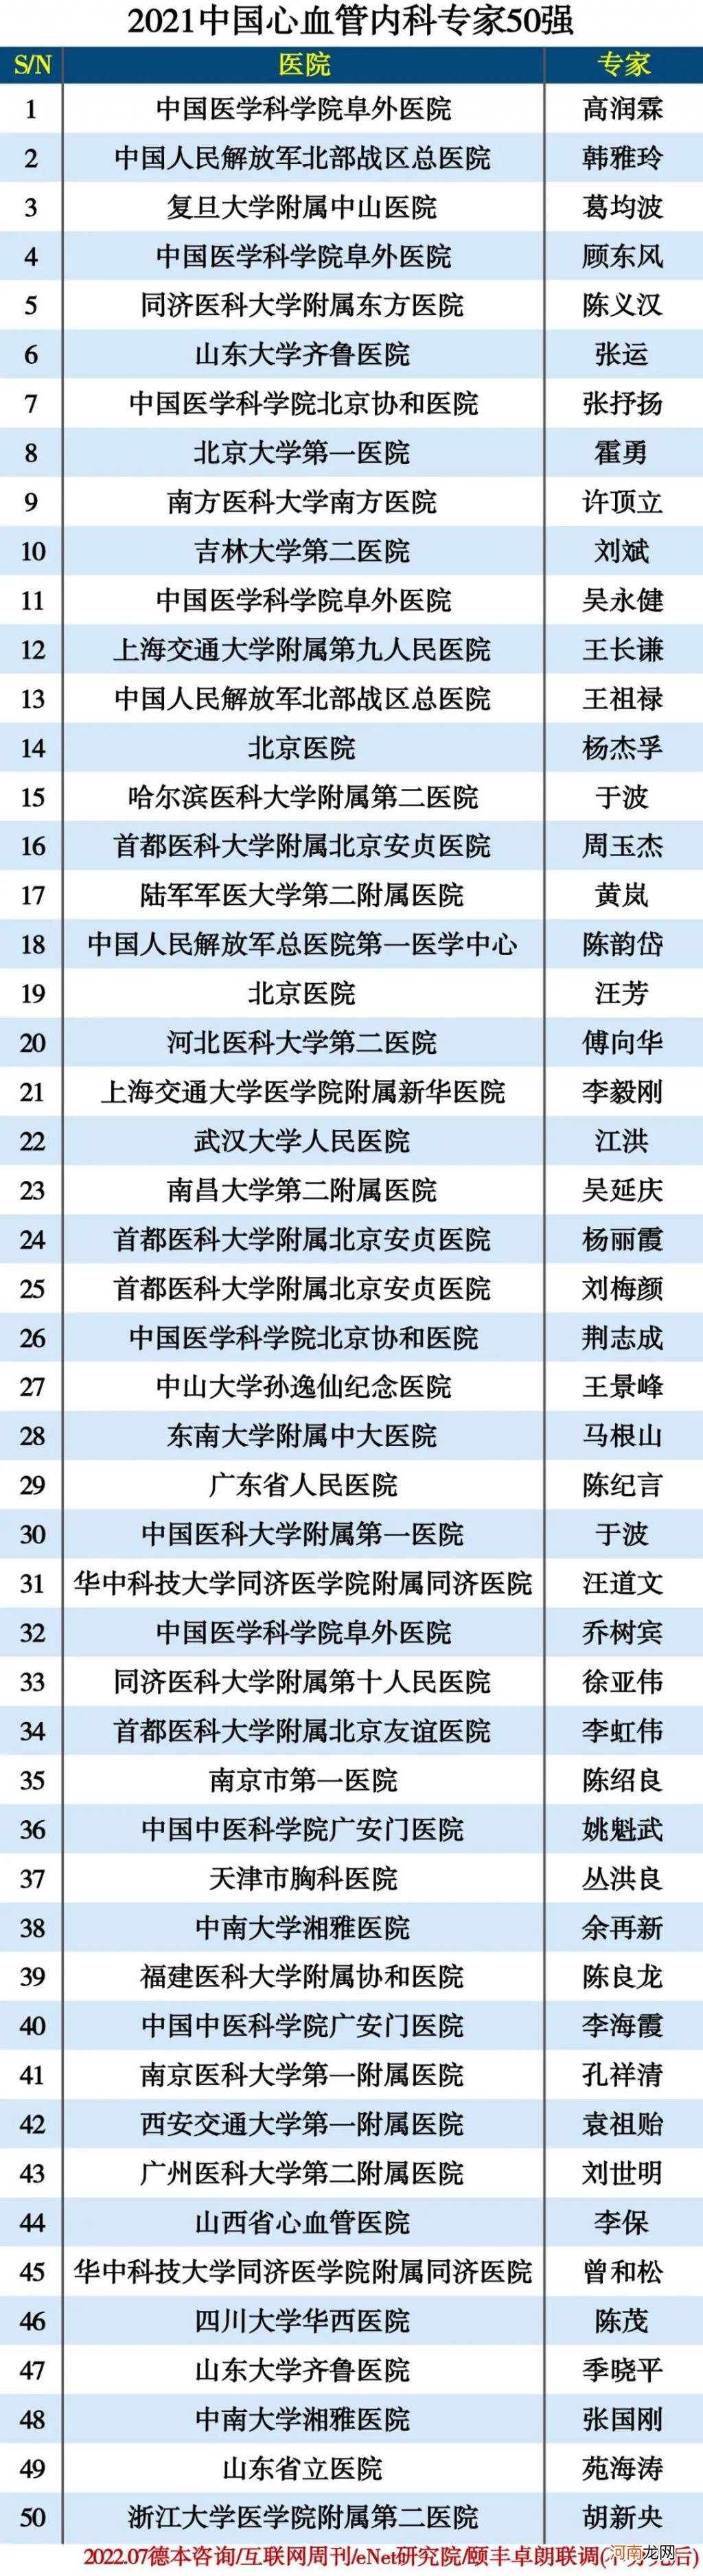 中国心血管内科专家50强 全国前十名心脏专家